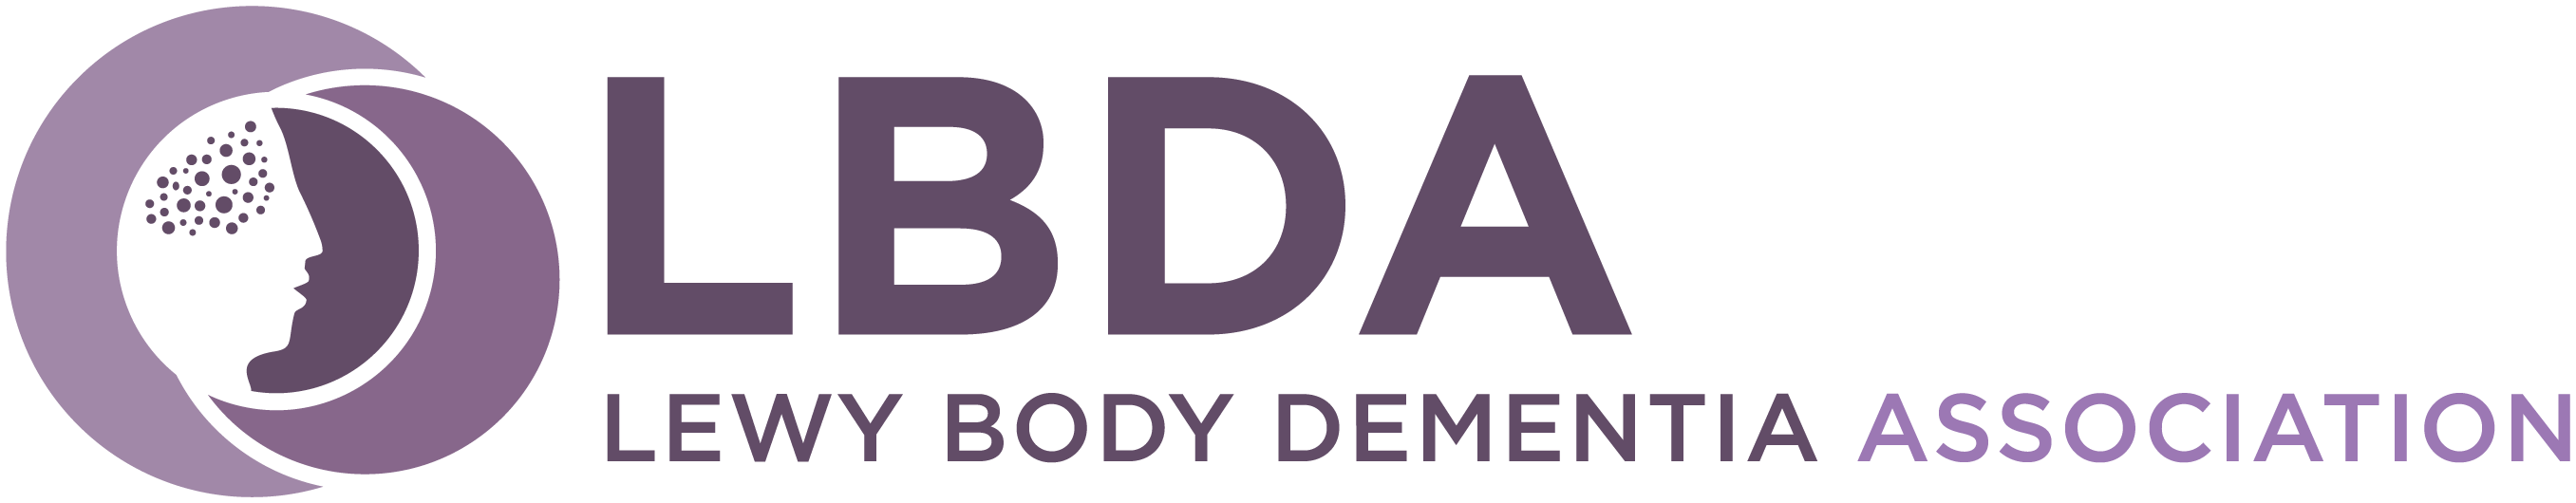 lbda logo